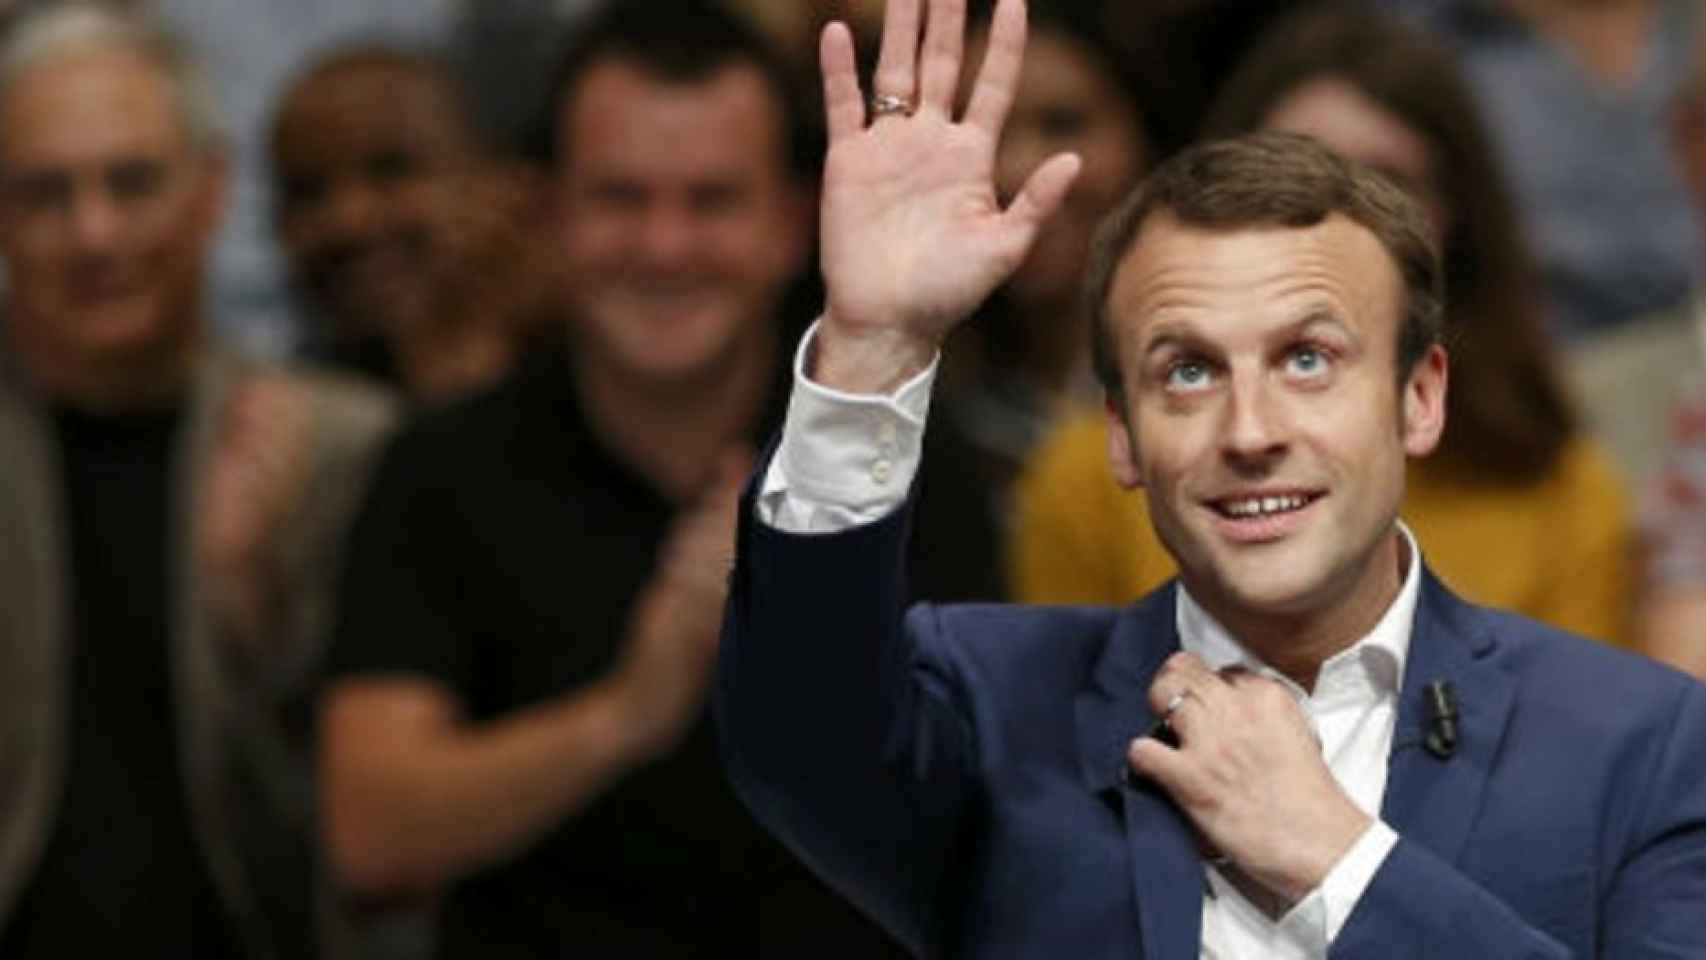 Macron subirá el salario mínimo y bajará impuestos para calmar las protestas